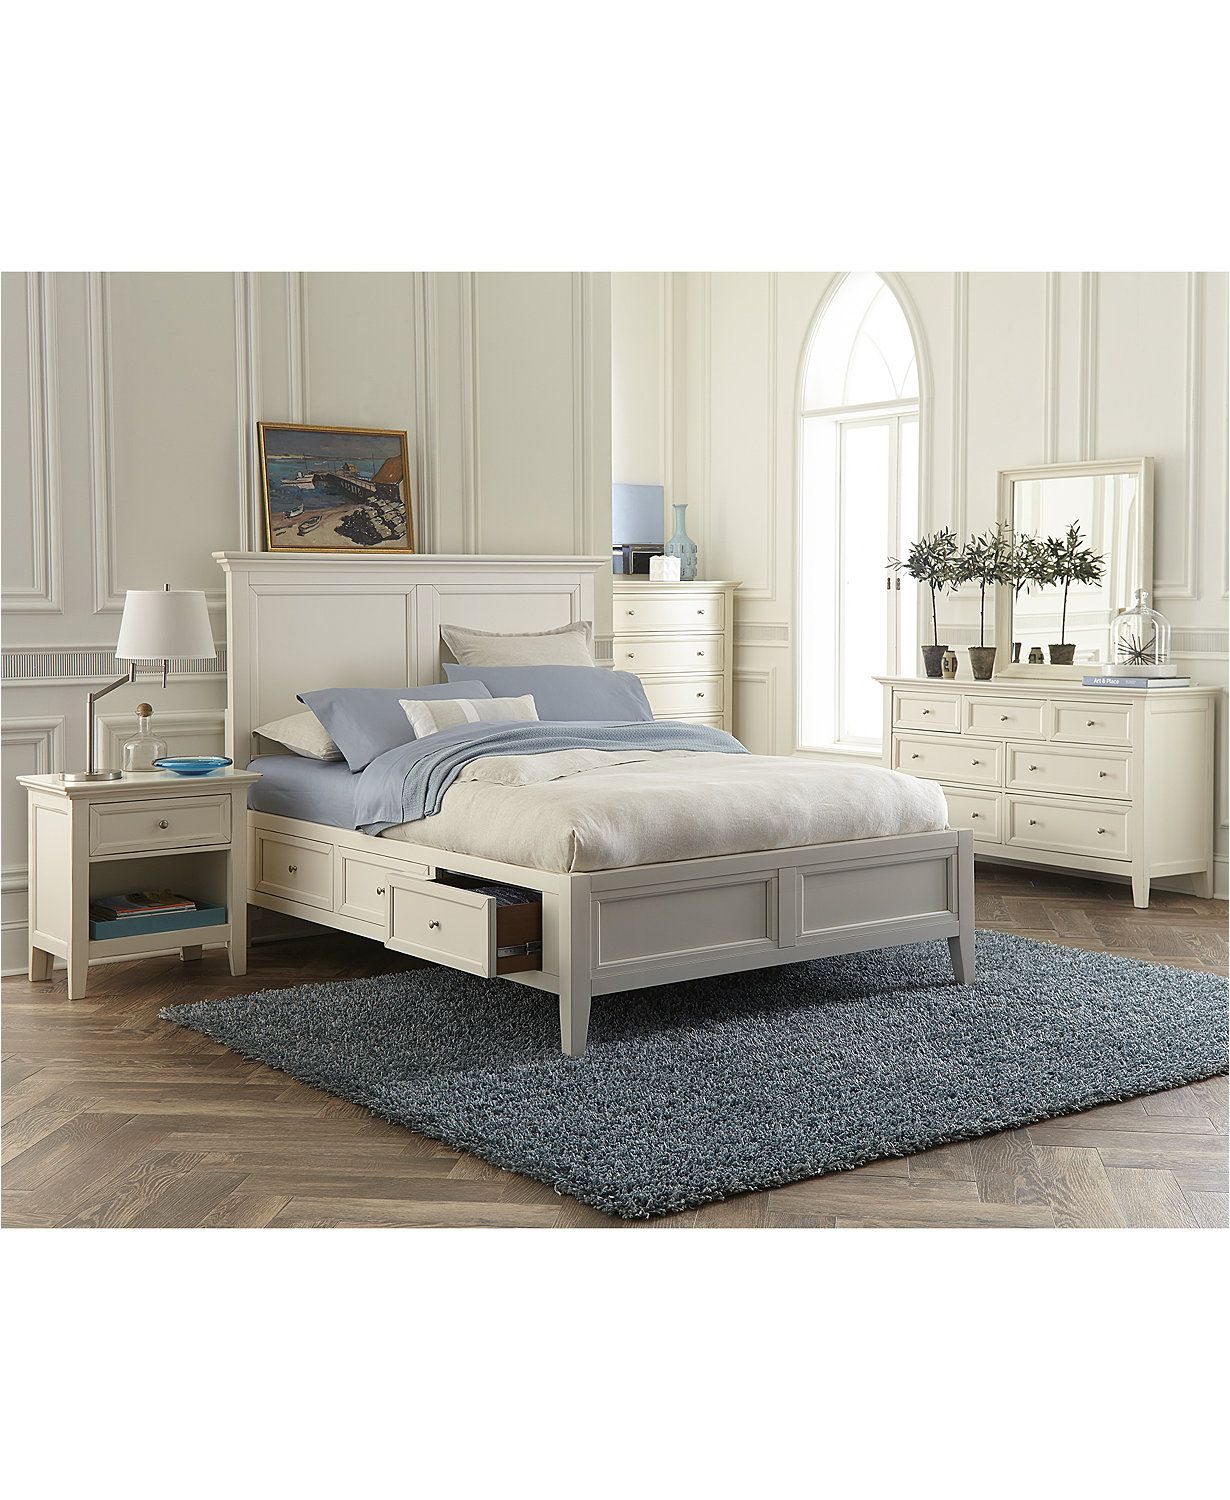 Sanibel Storage Bedroom Furniture 3 Pc Set Queen Bed Nightstand with size 1230 X 1500